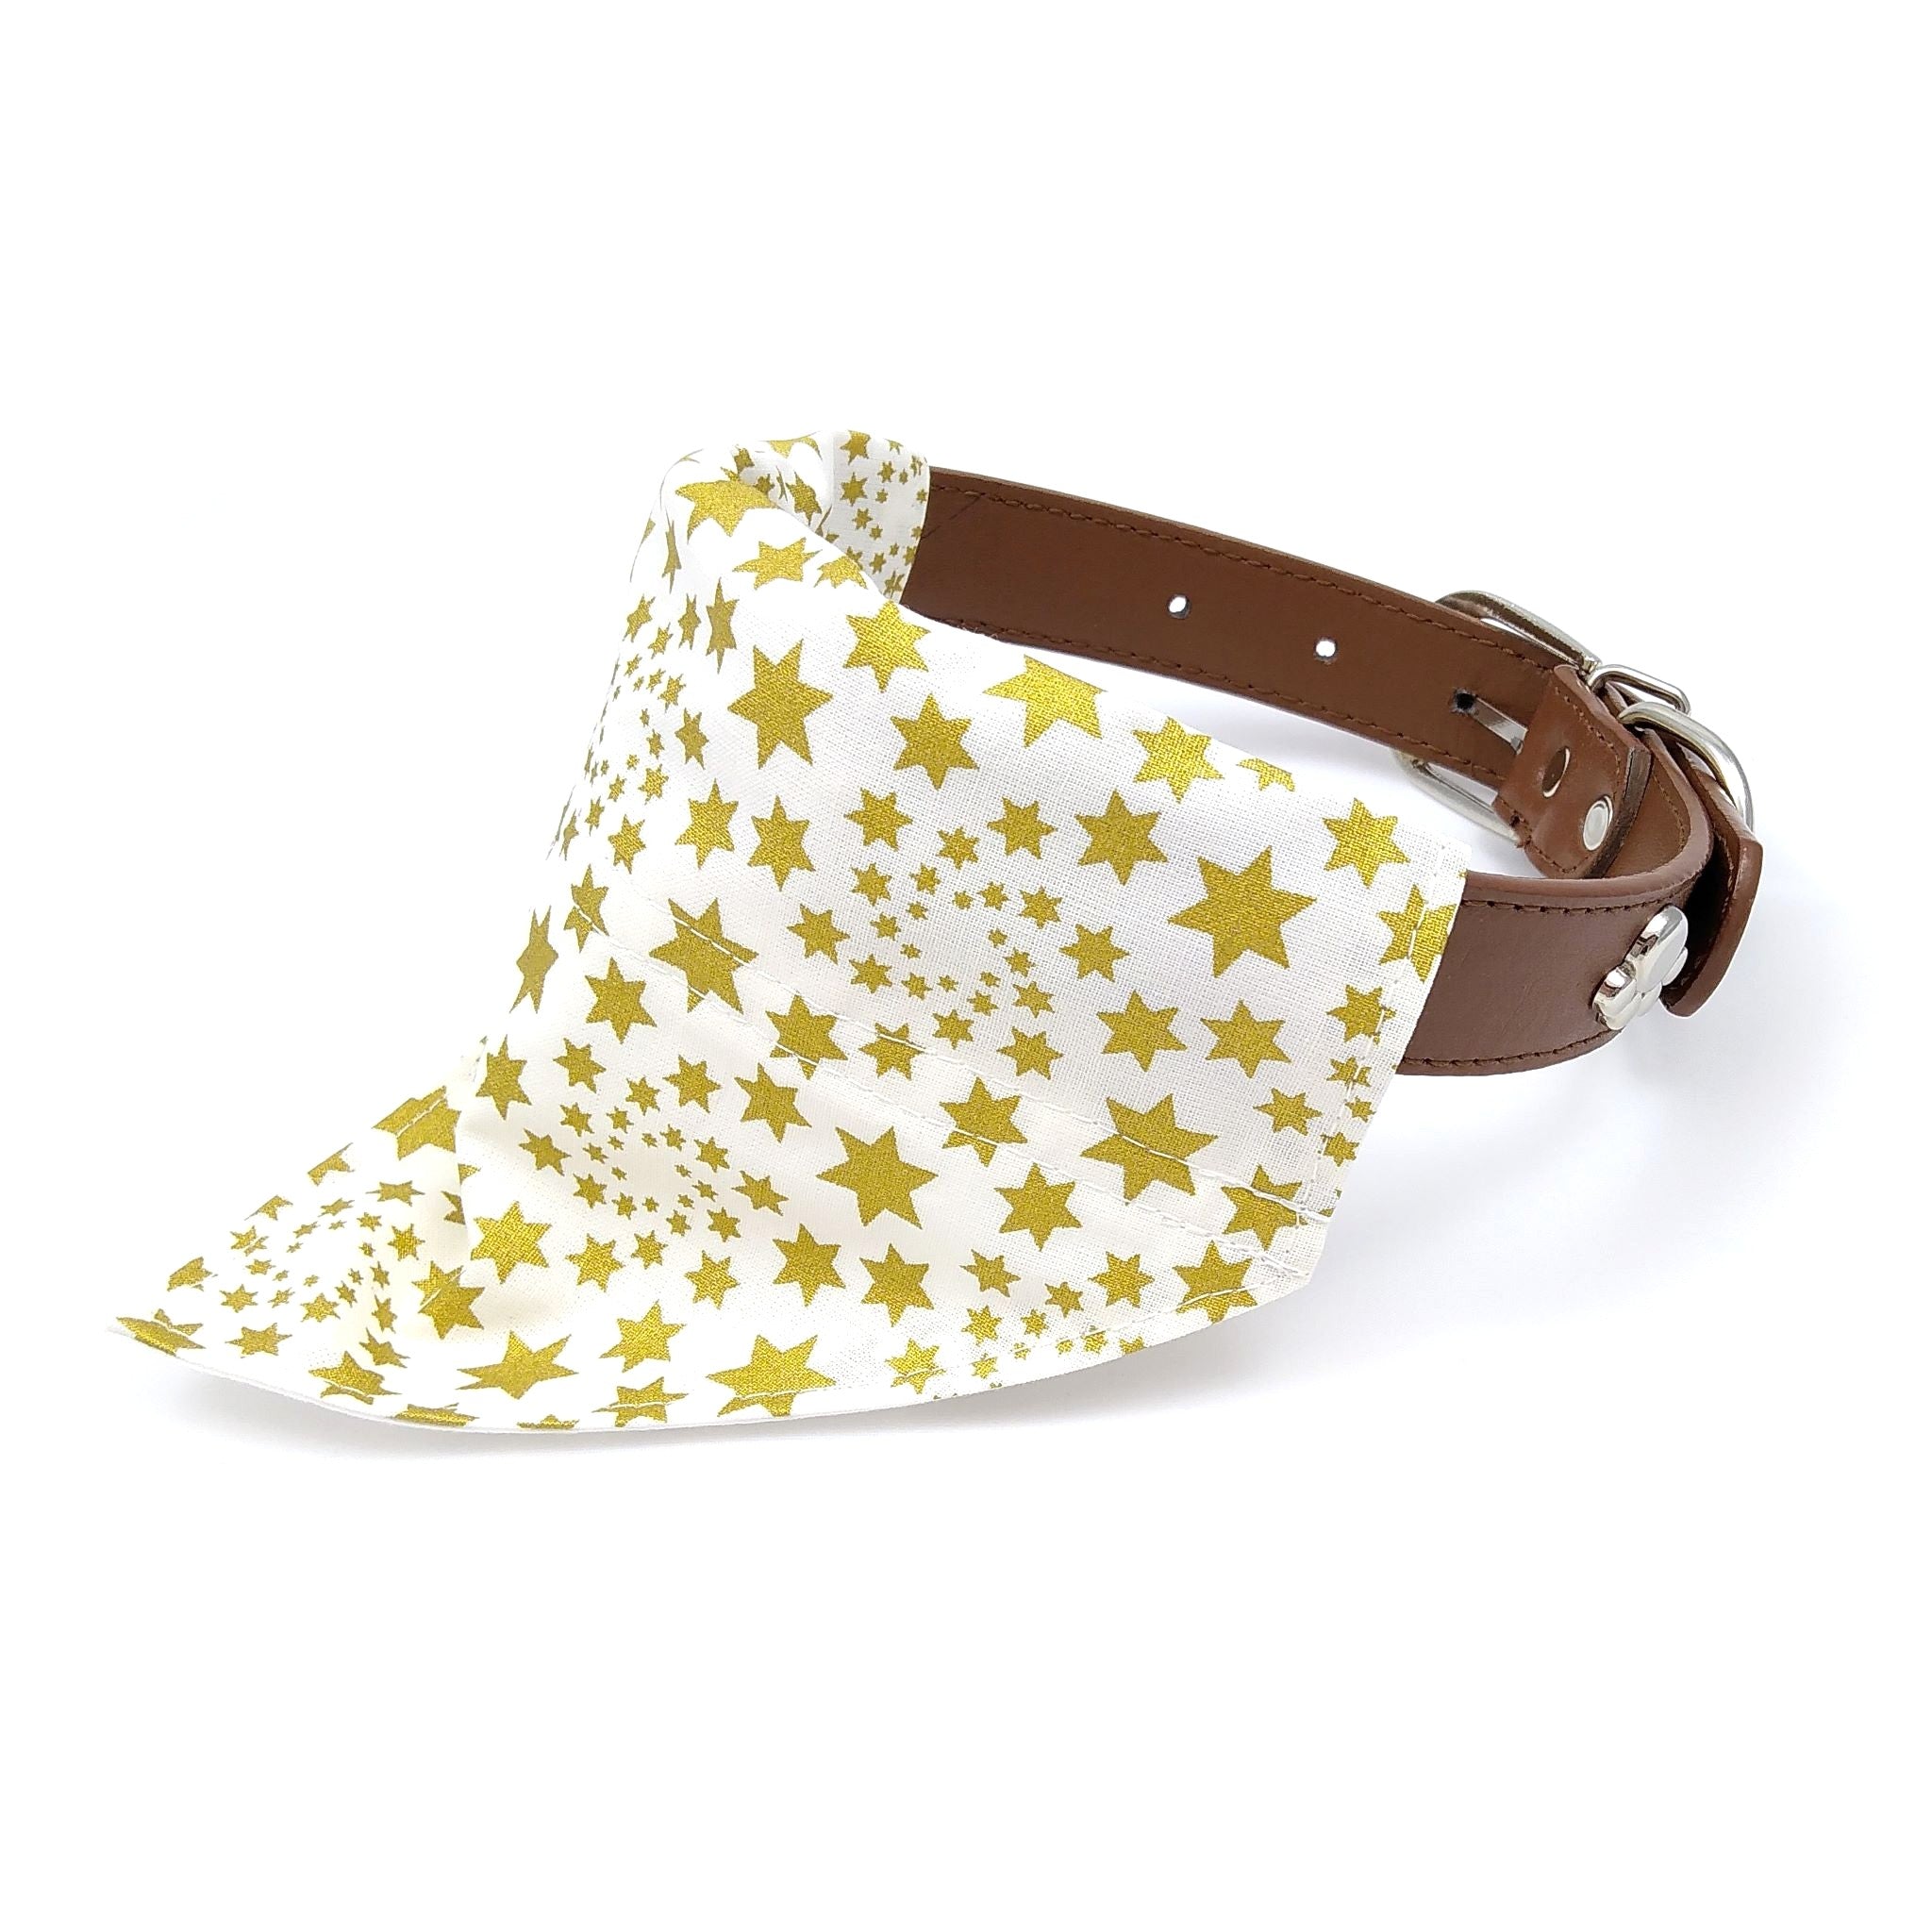 White with gold stars collar dog bandana